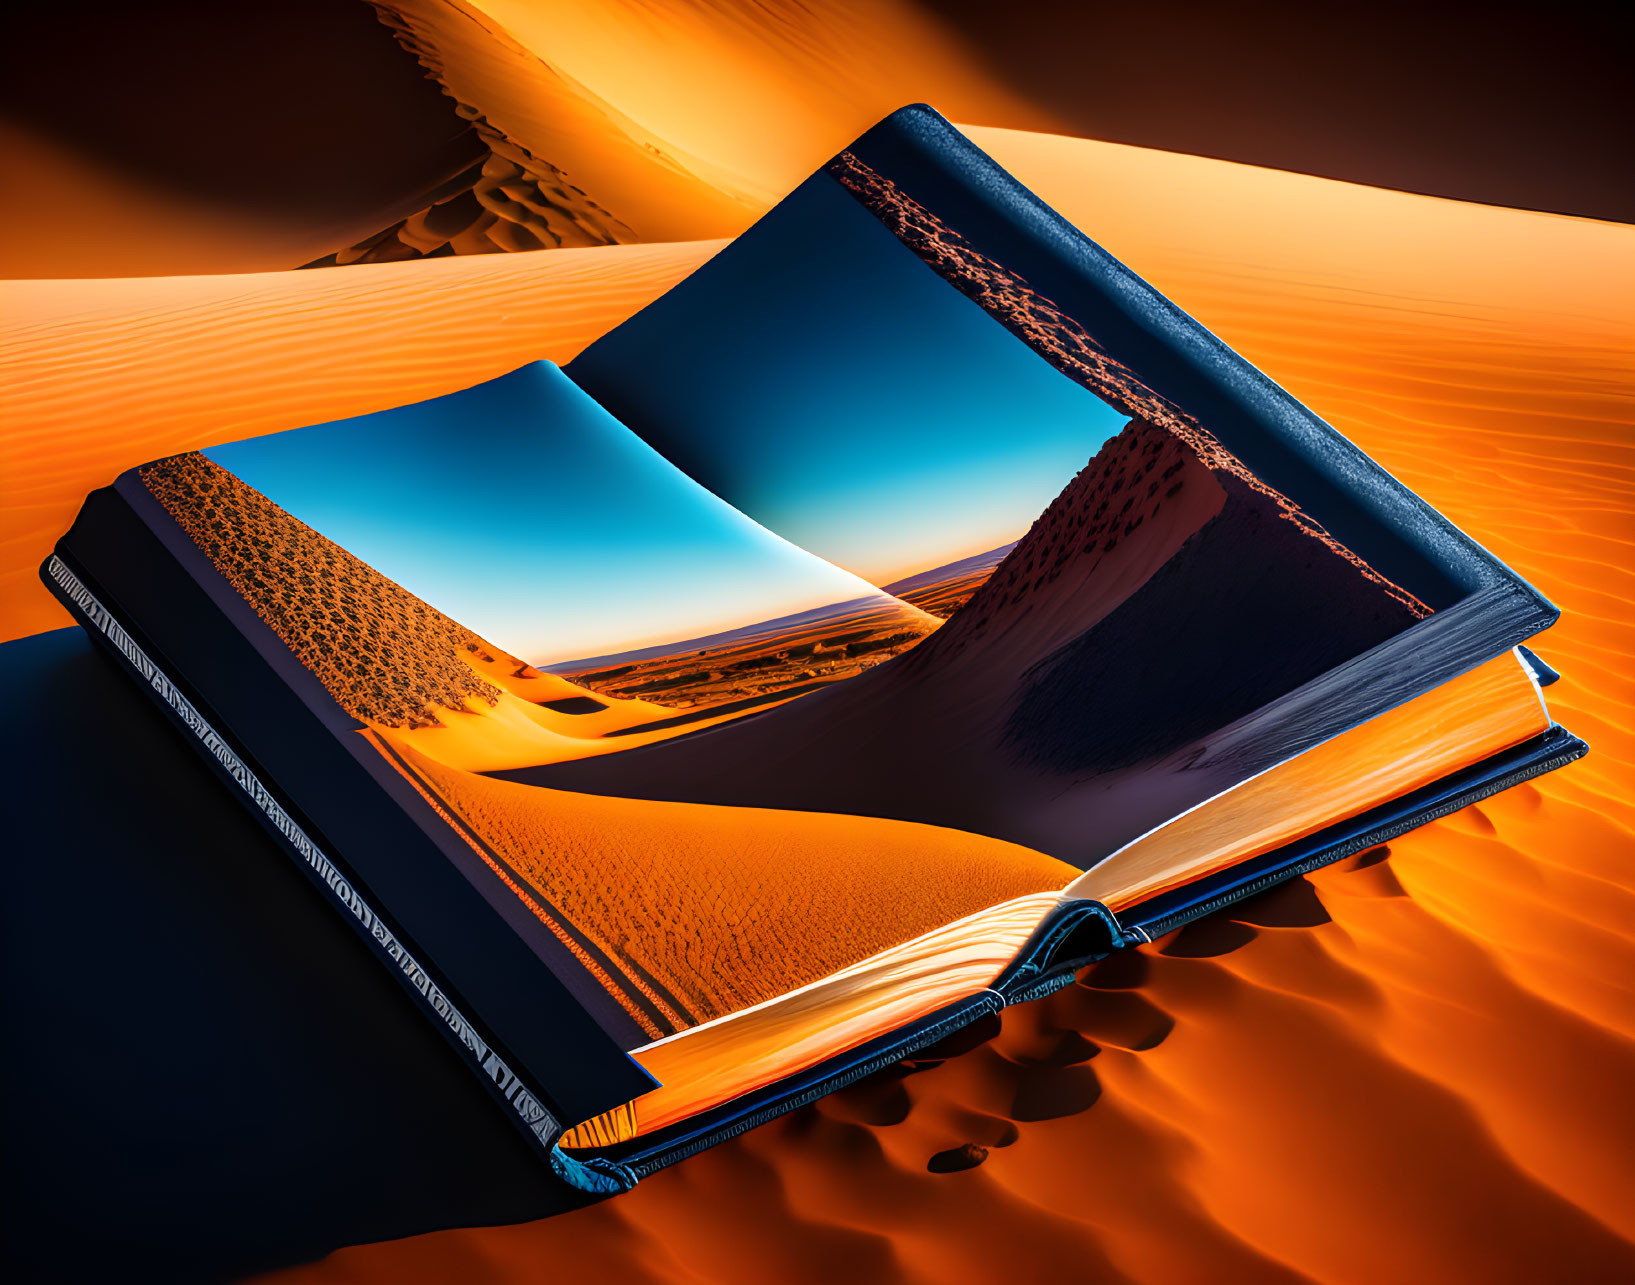 Surreal open book merging with desert landscape under orange and blue sky